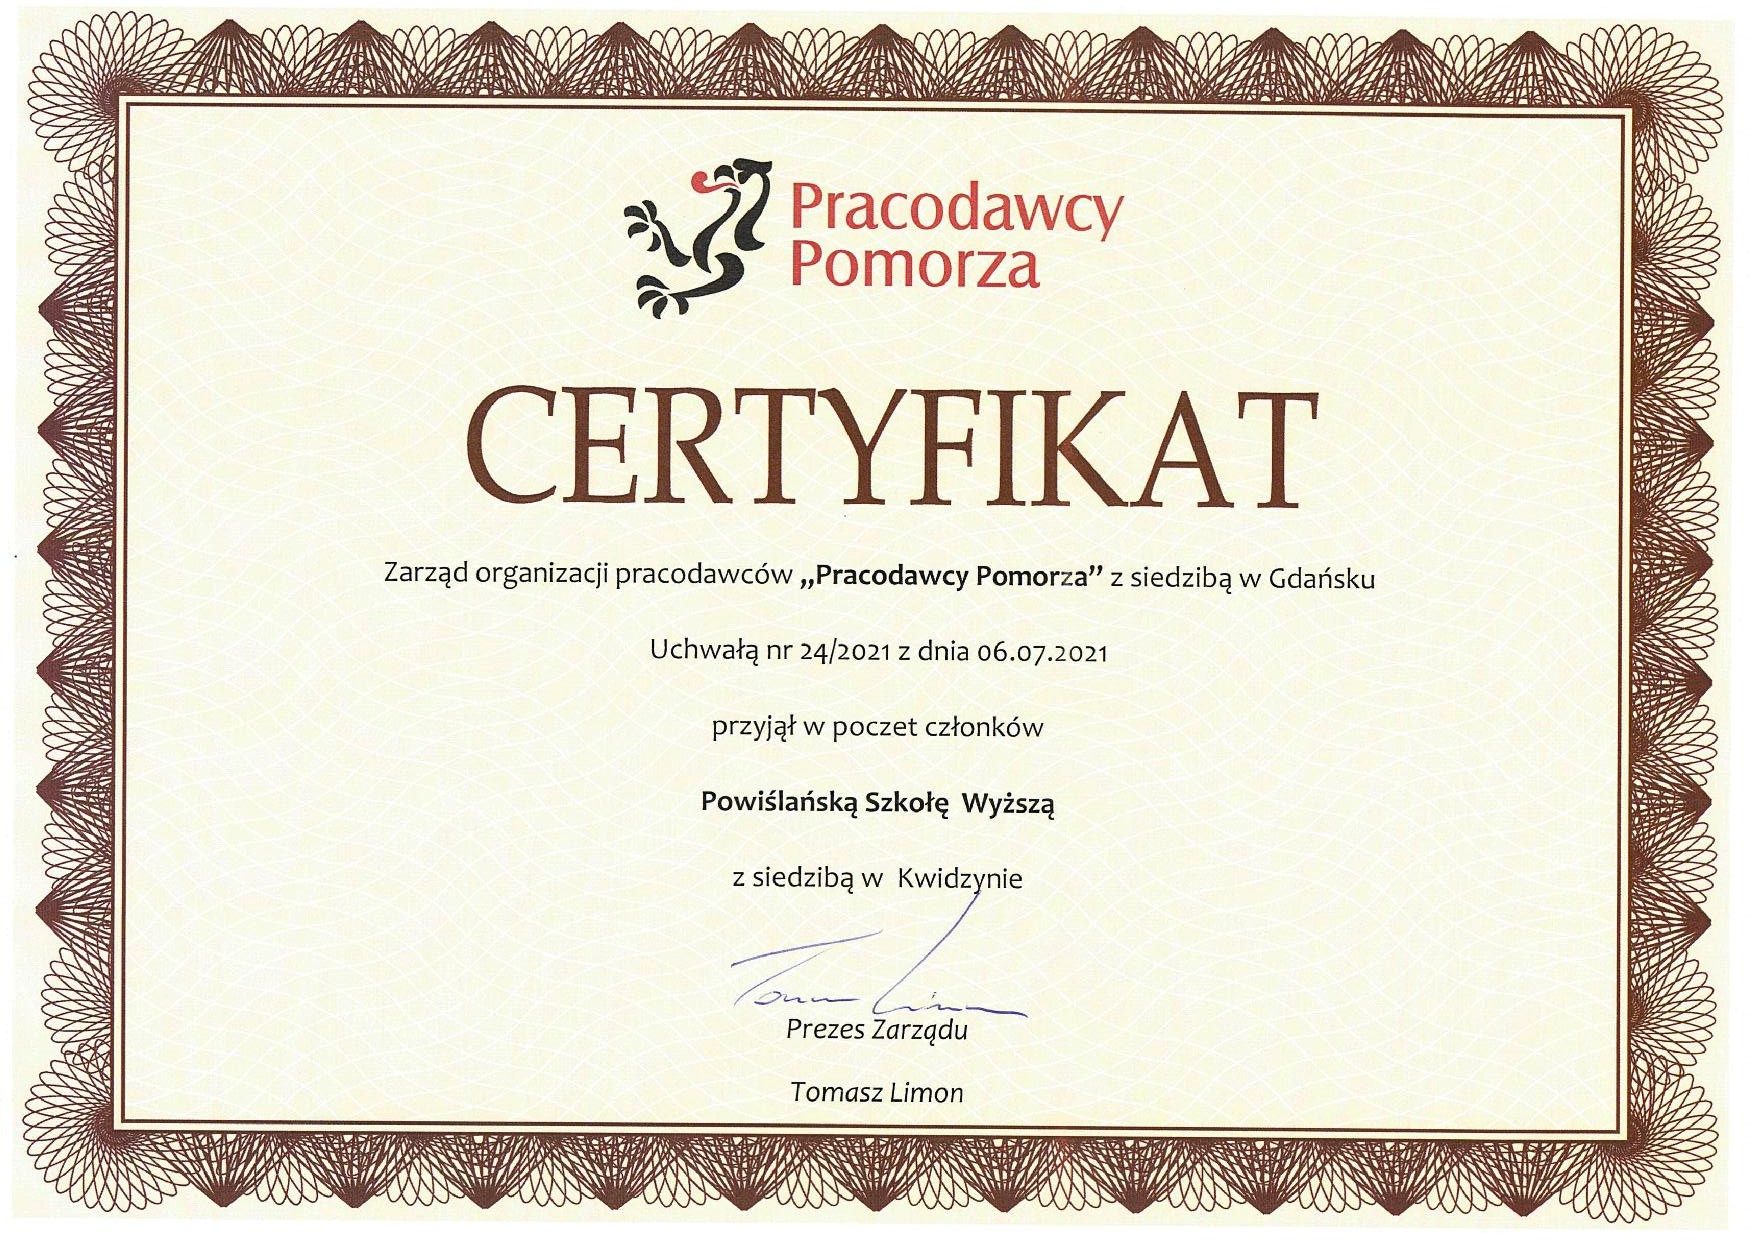 Pracodawcy Pomorza - Certyfikat.jpg